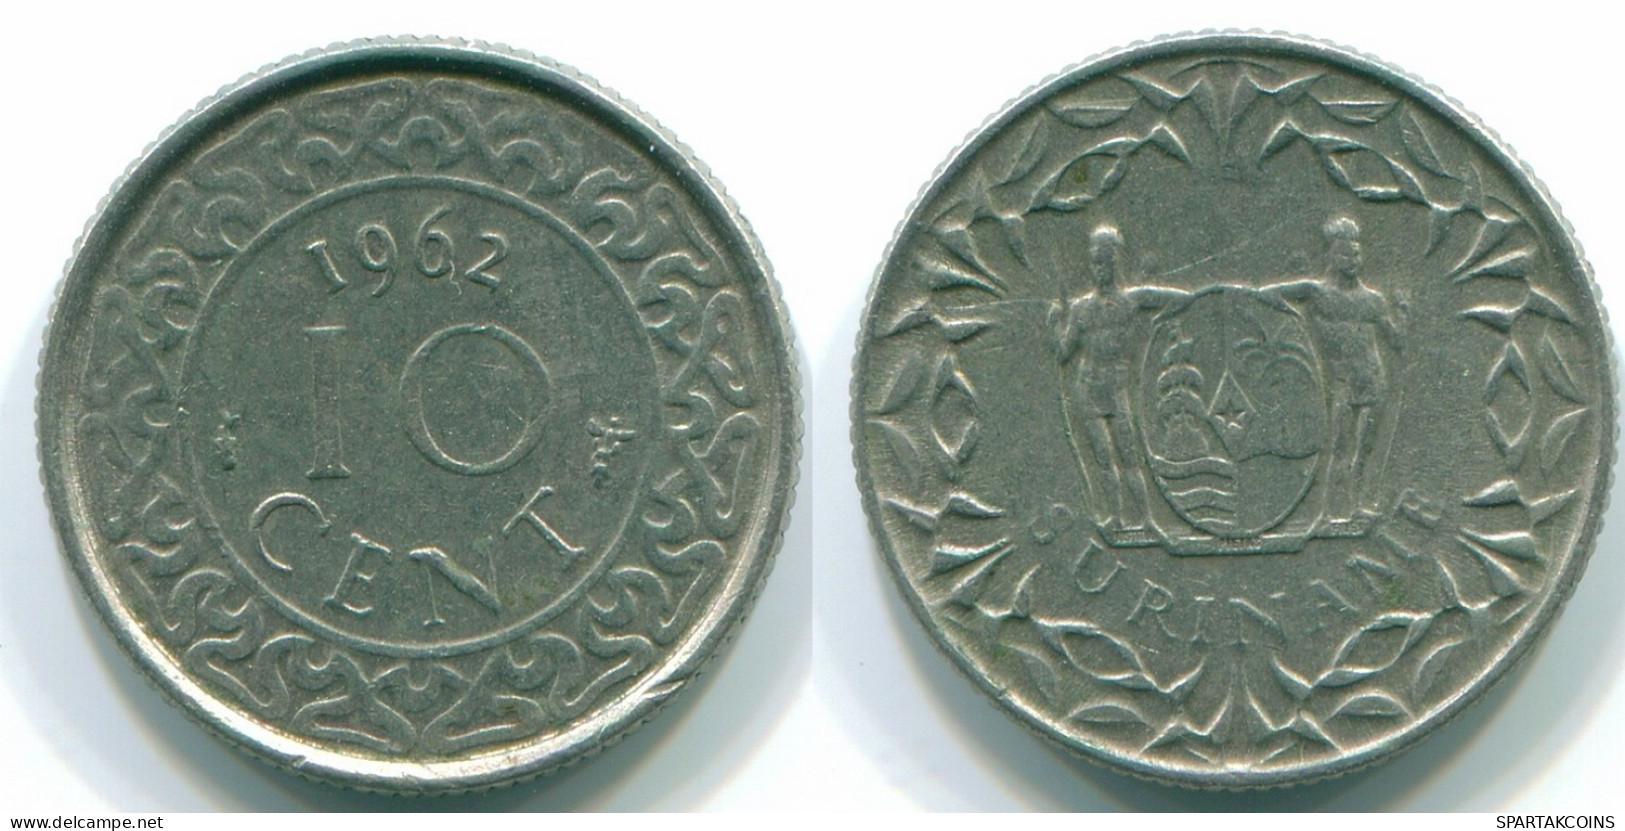 10 CENTS 1962 SURINAME NEERLANDÉS NETHERLANDS Nickel Colonial Moneda #S13200.E.A - Surinam 1975 - ...